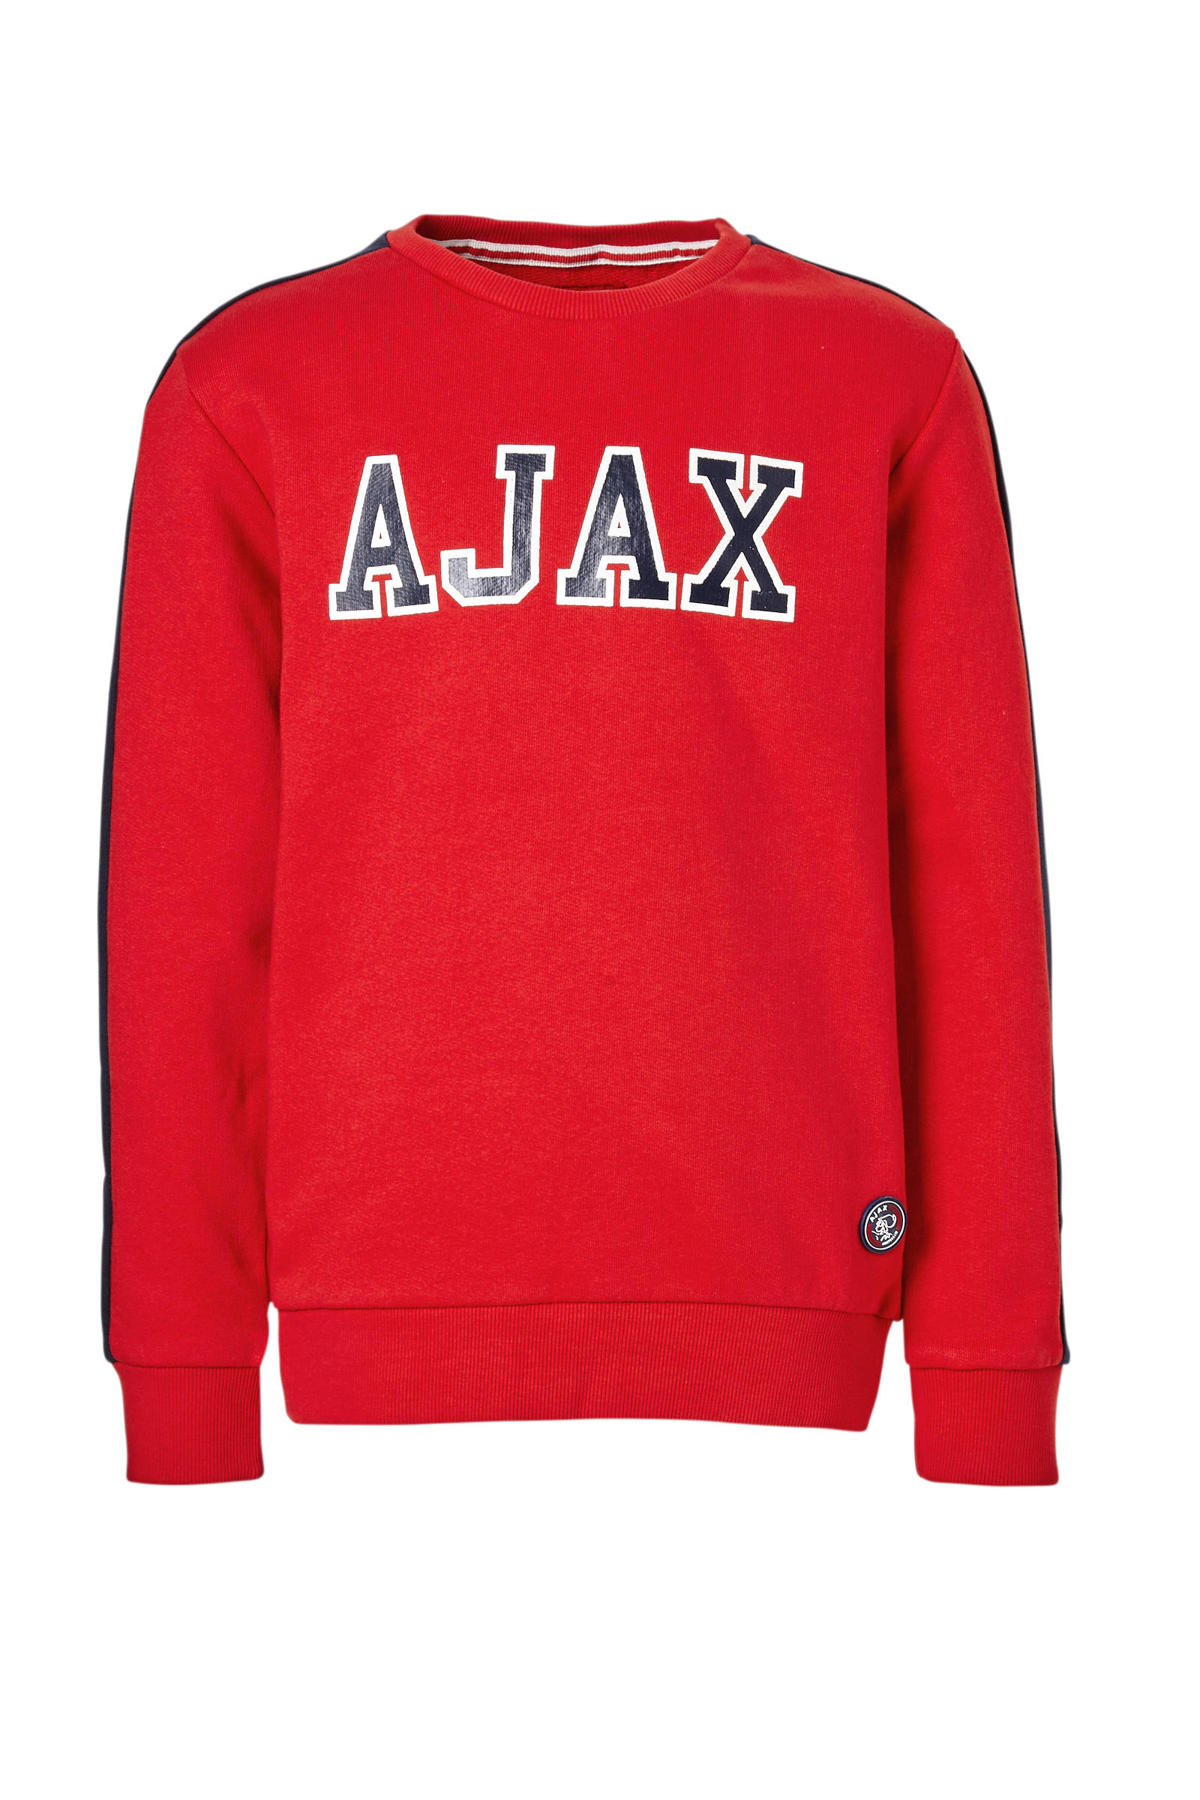 exegese leerling Glimp Ajax sweater Rowen rood | wehkamp